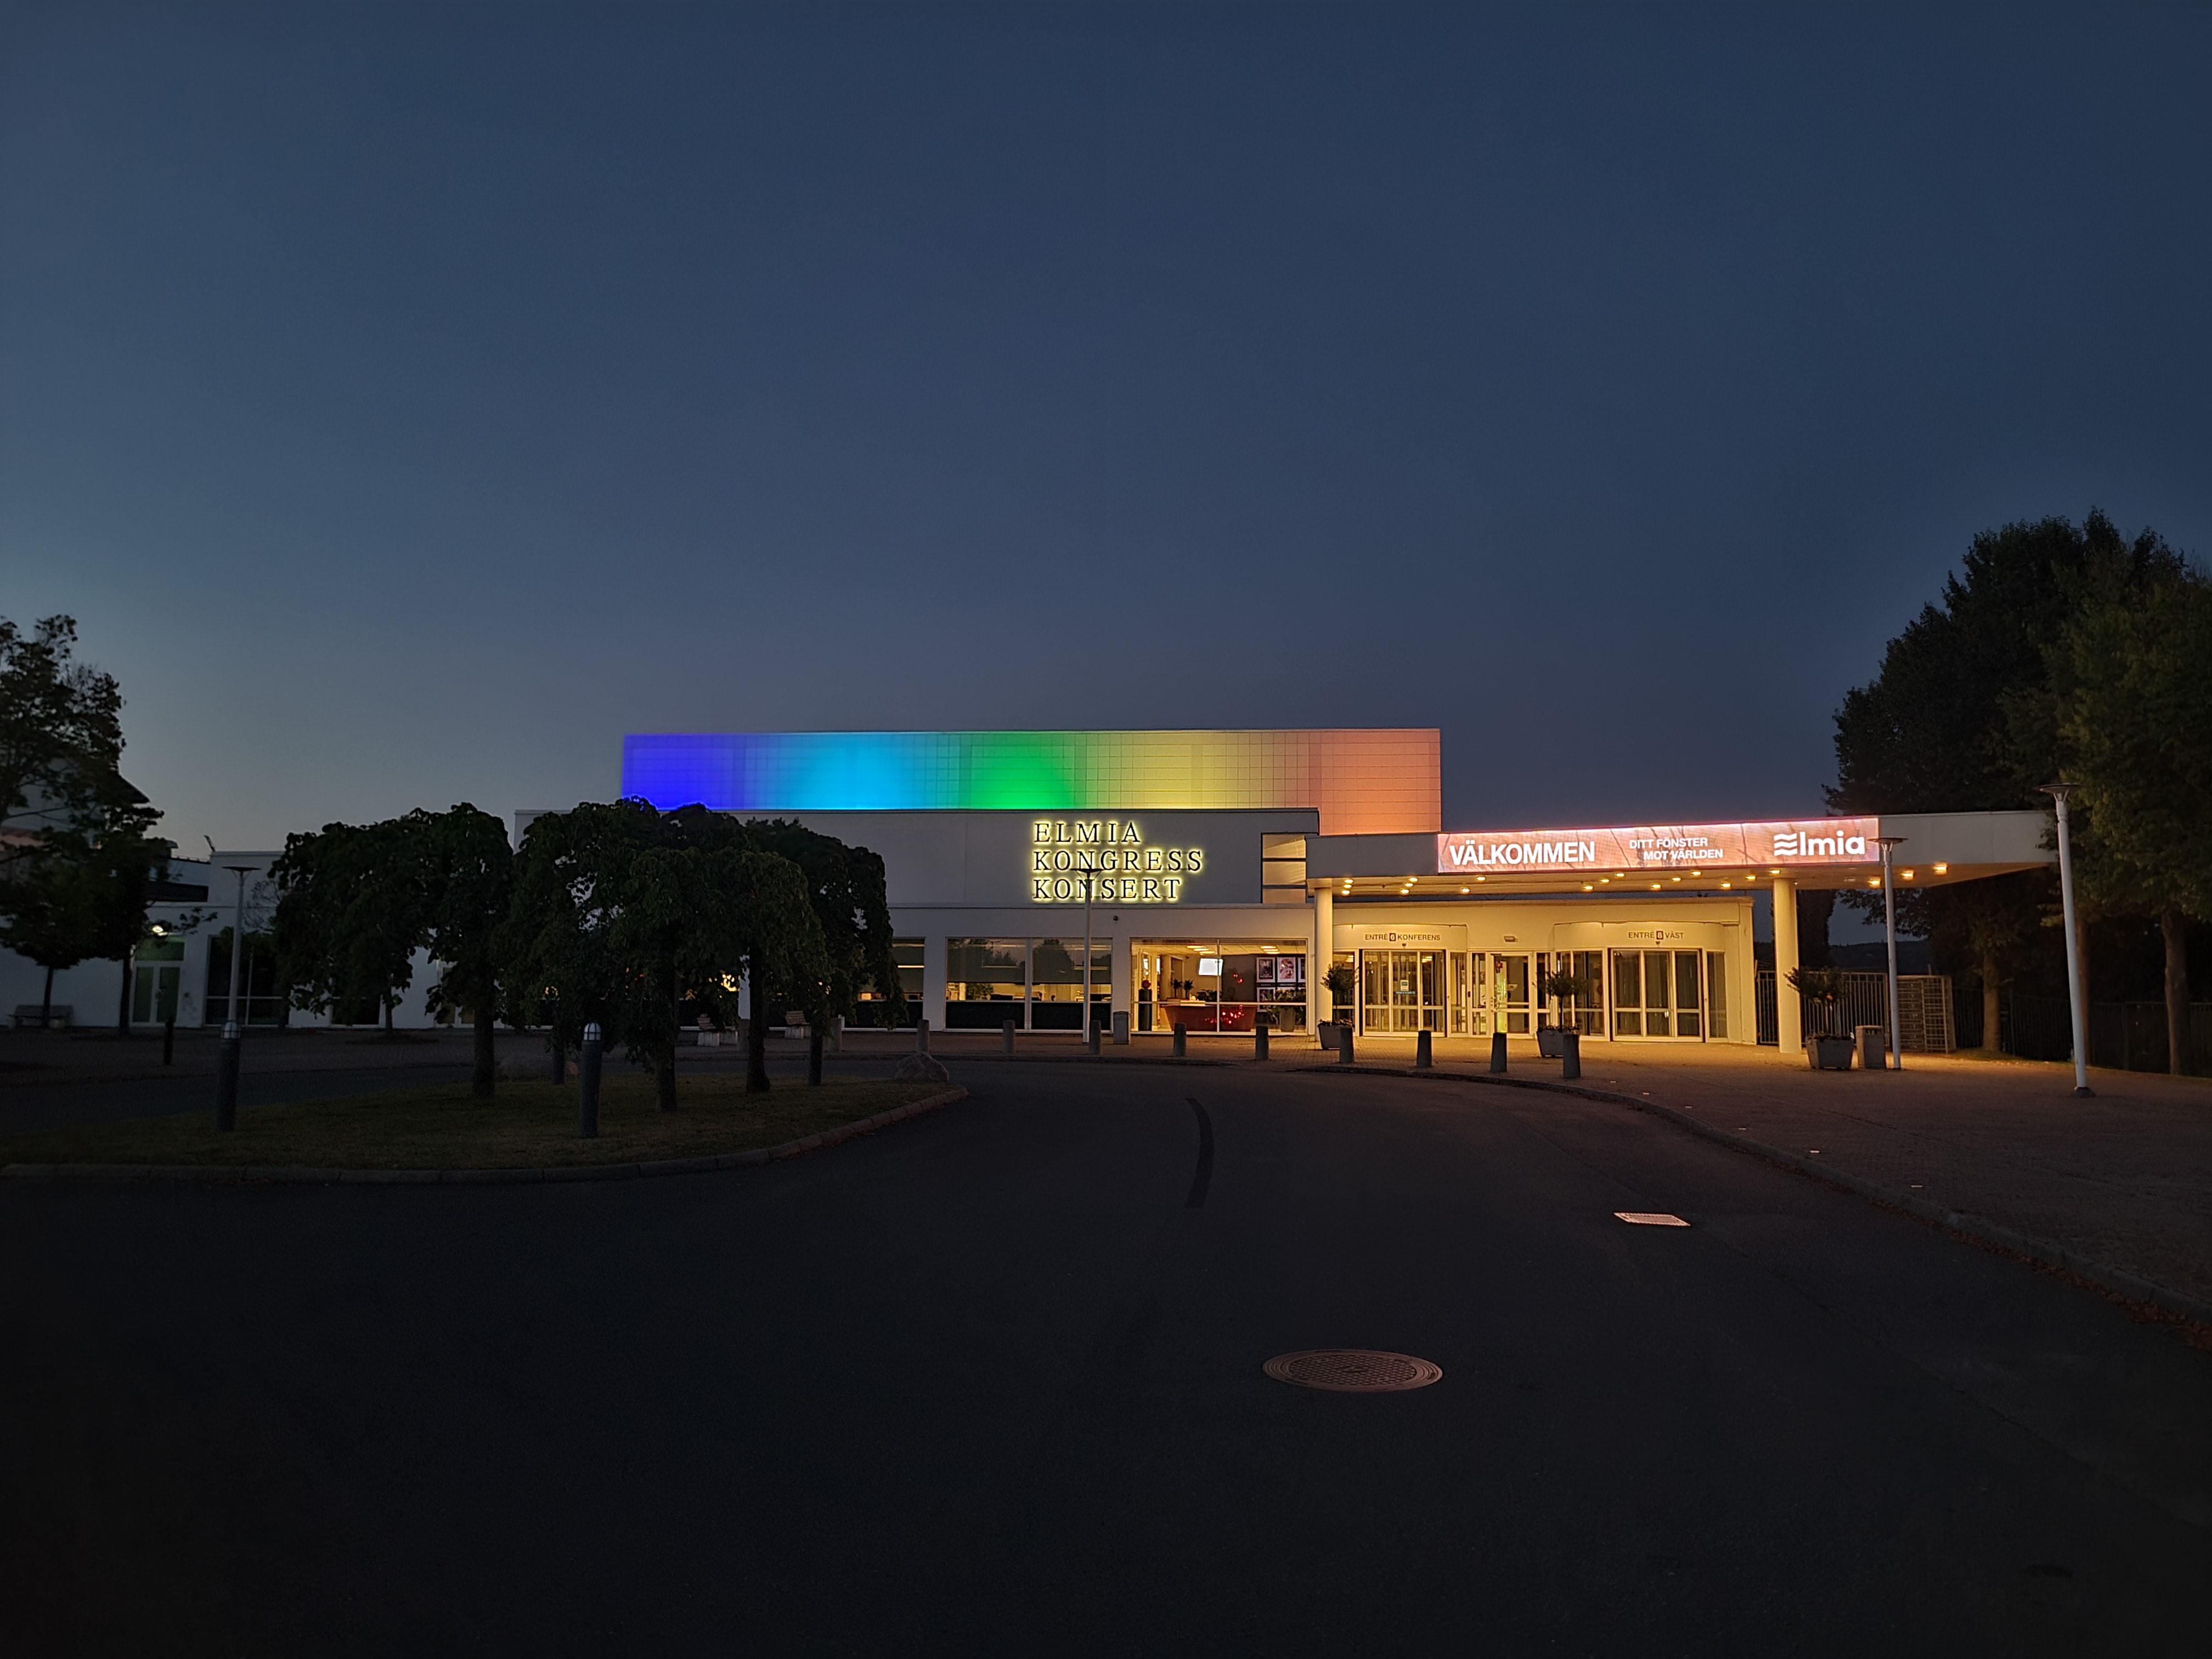 Elmia Kongress och Konserthus upplyst i regnbågsfärger, sett från parkeringen mot entrén.